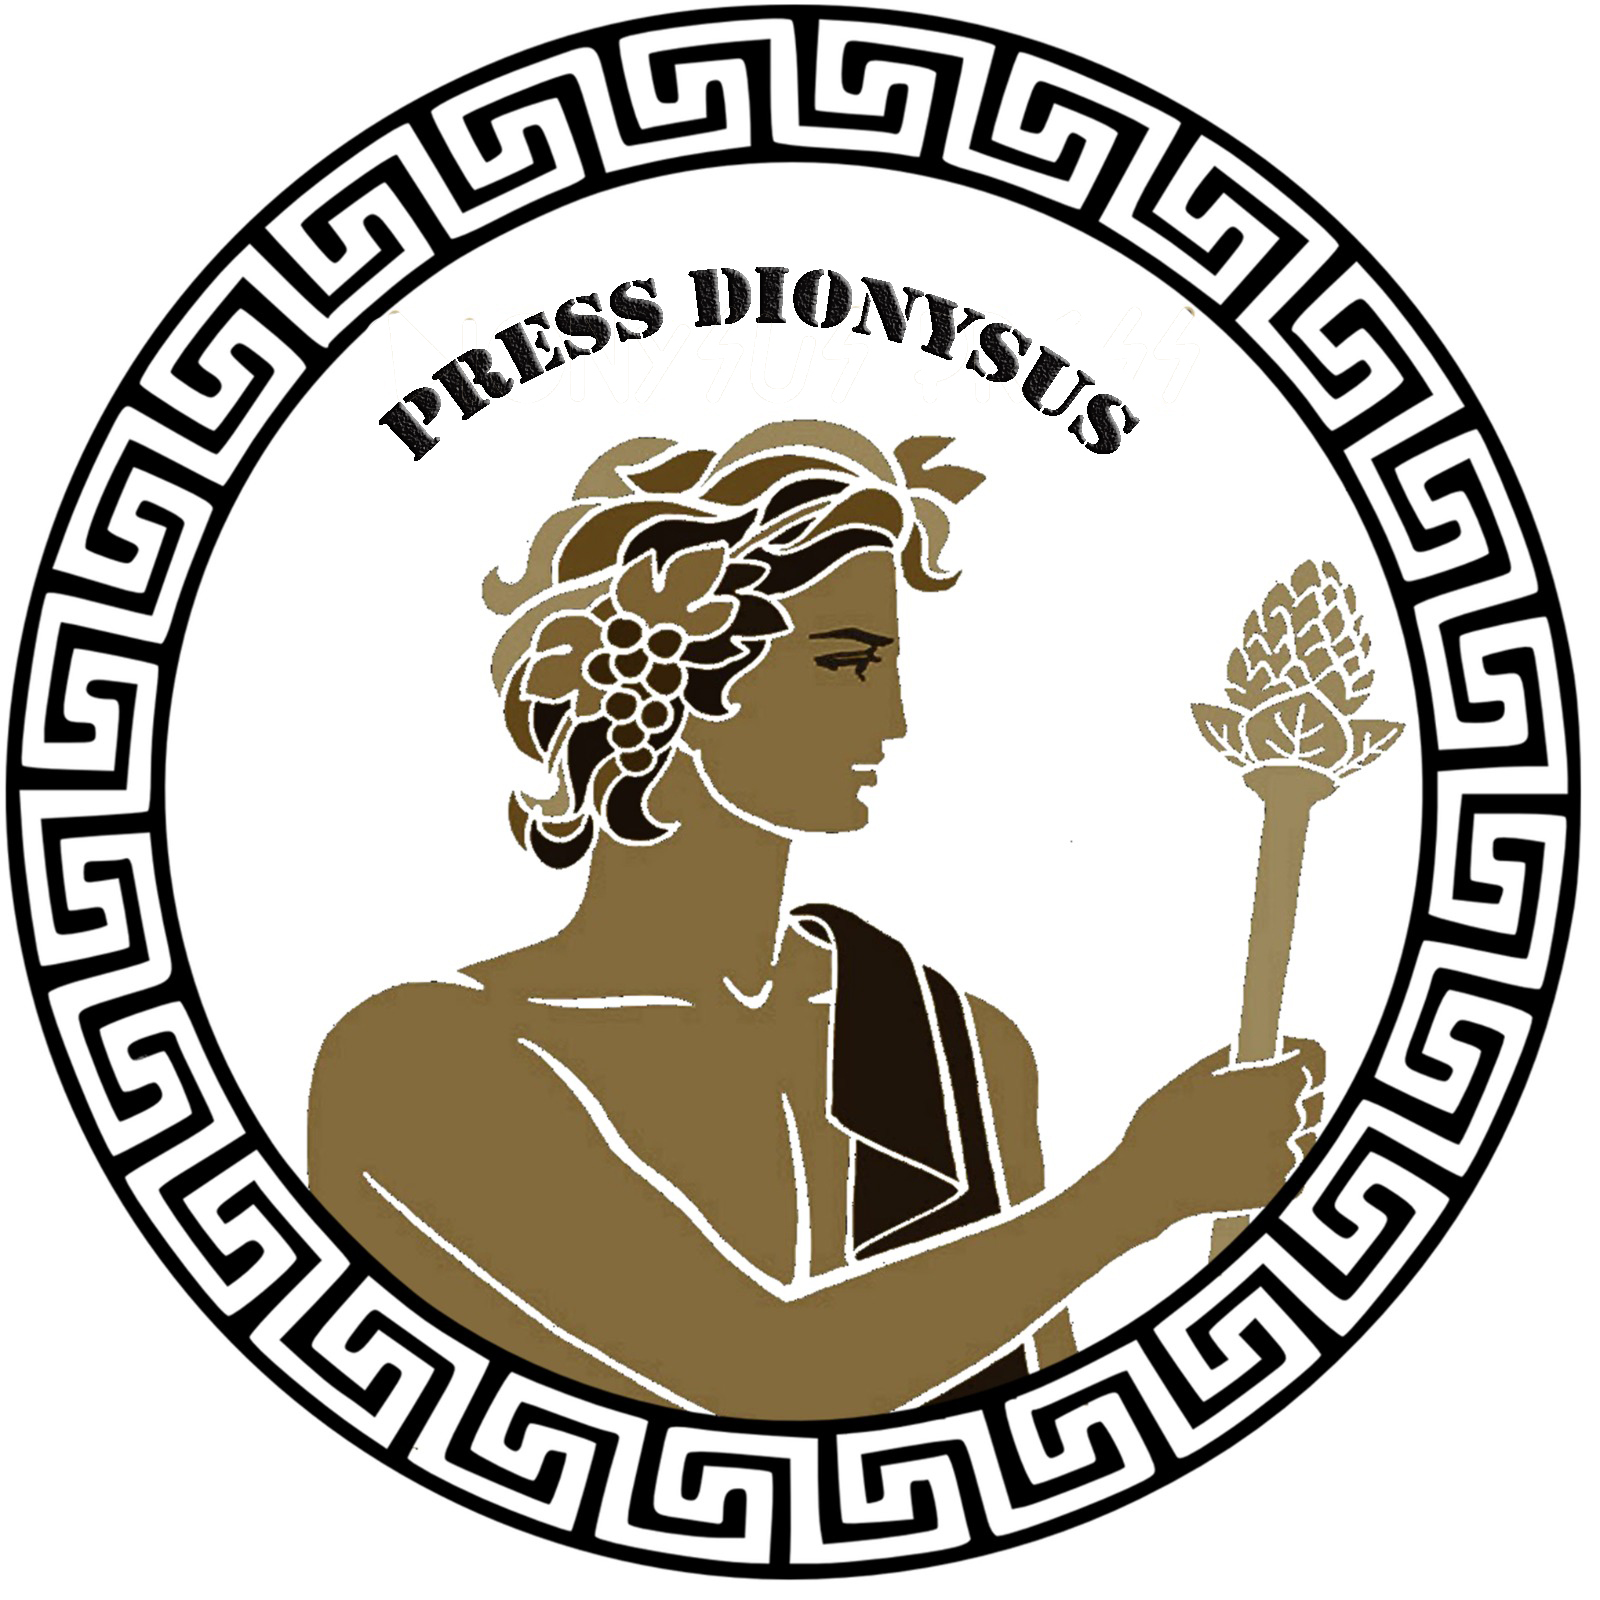 Press Dionysus